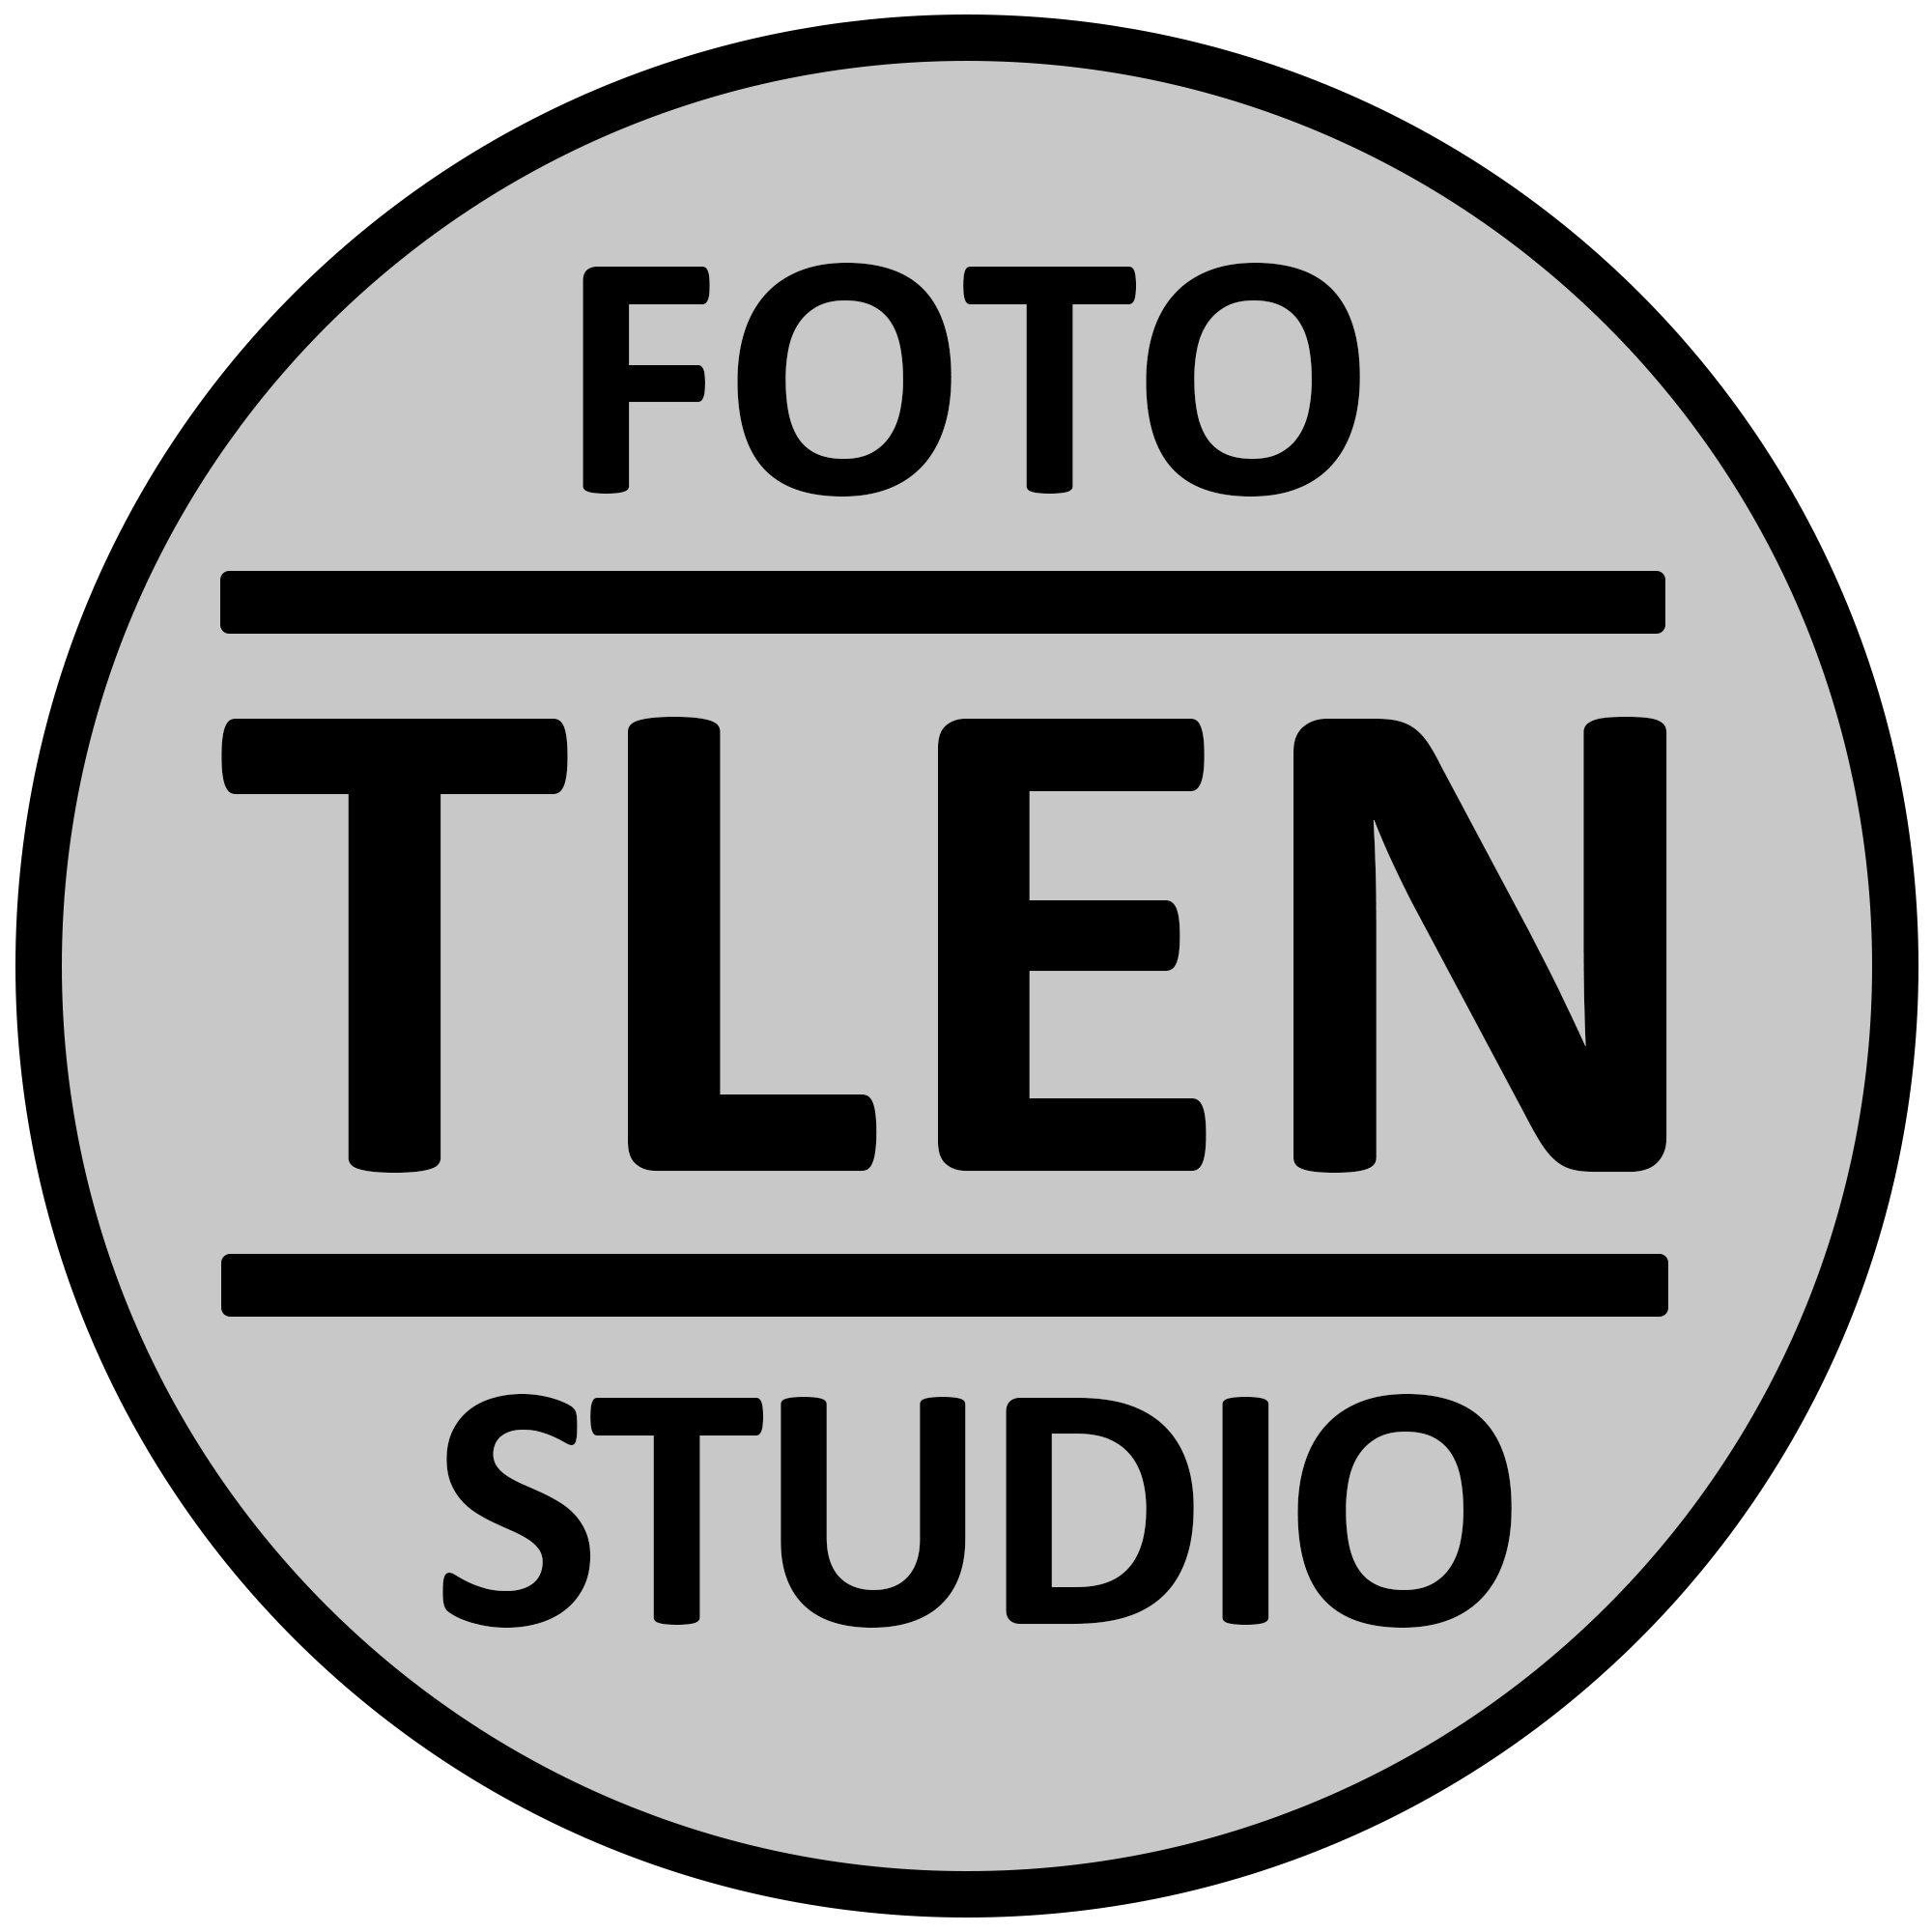 Foto Studio Tlen